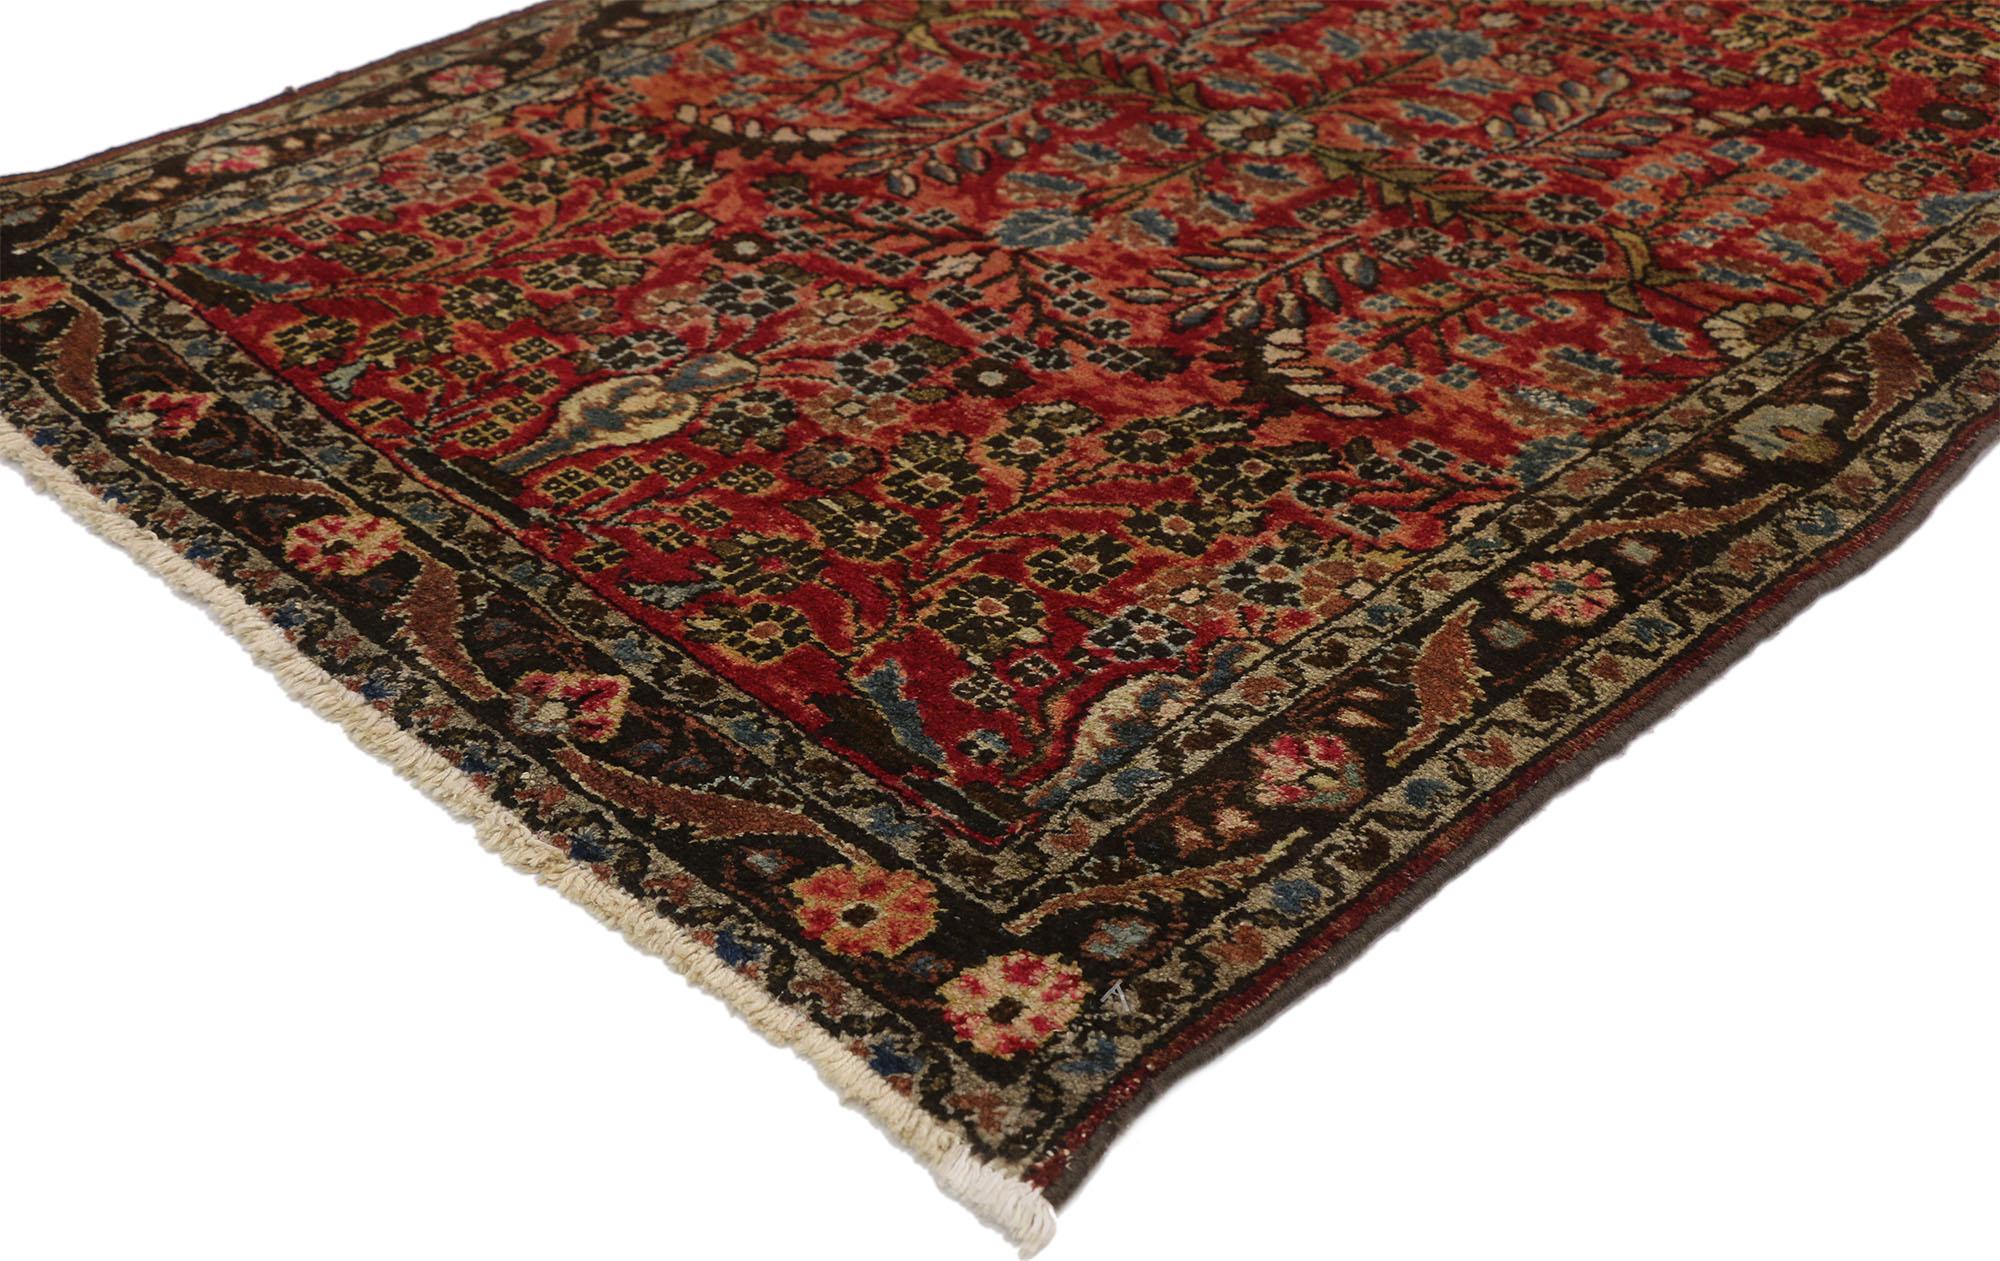 72334, antiker persischer Hamadan Teppich mit floralem Vasenmotiv und traditionellem Stil. Dieser handgeknüpfte, antike persische Hamadan-Teppich aus Wolle beeindruckt mit einem von Sarouk inspirierten Blumenmuster. An beiden Enden des Teppichs